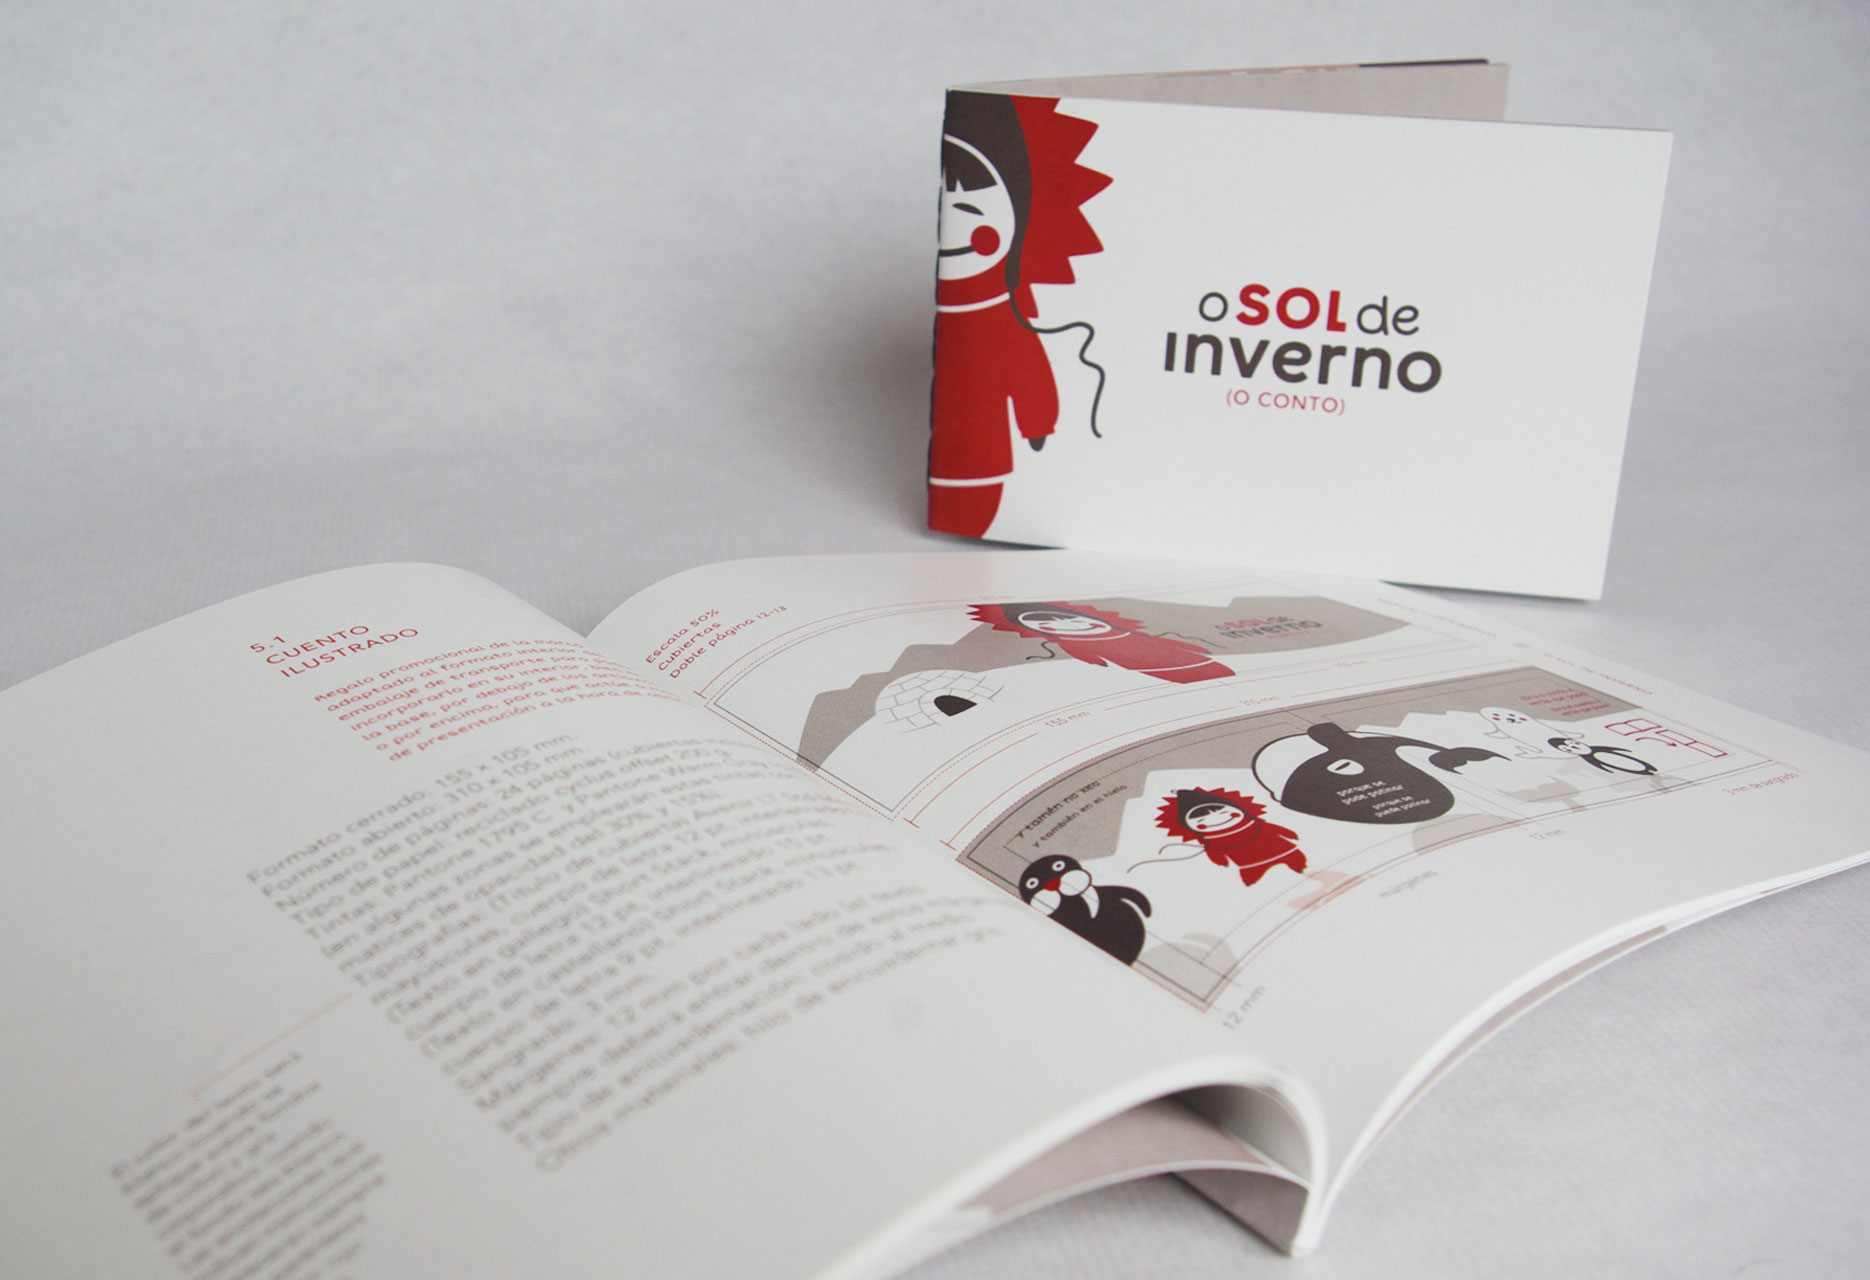 Design child brand O sol de inverno - web design / branding / illustration / packaging - 2015